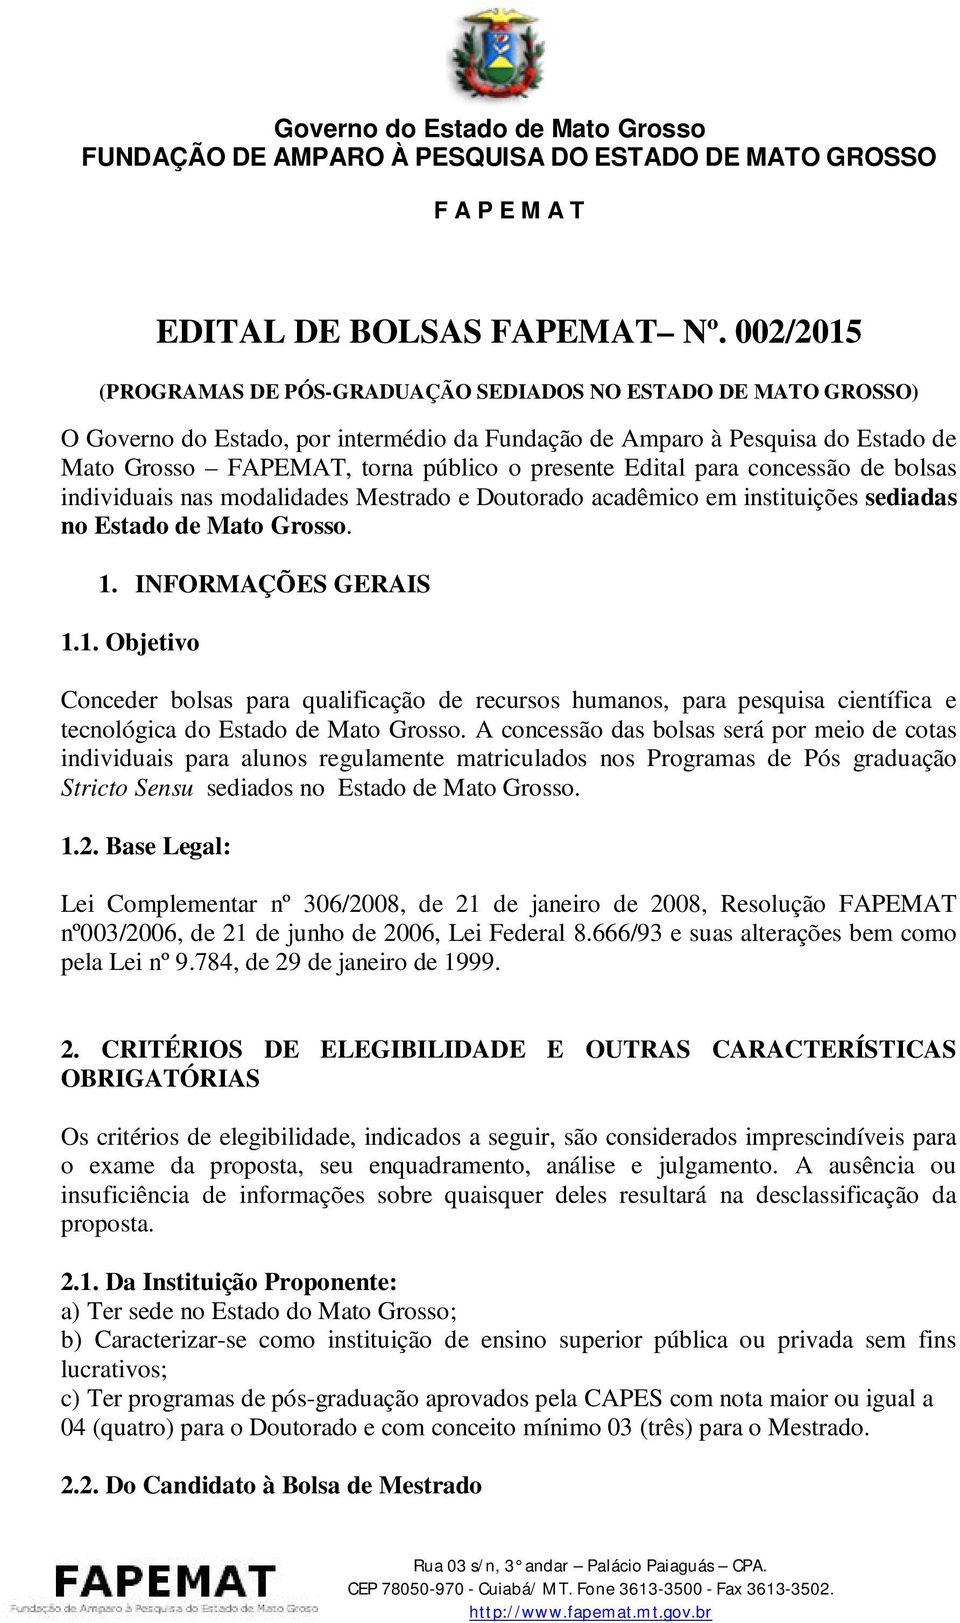 Edital para concessão de bolsas individuais nas modalidades Mestrado e Doutorado acadêmico em instituições sediadas no Estado de Mato Grosso. 1.